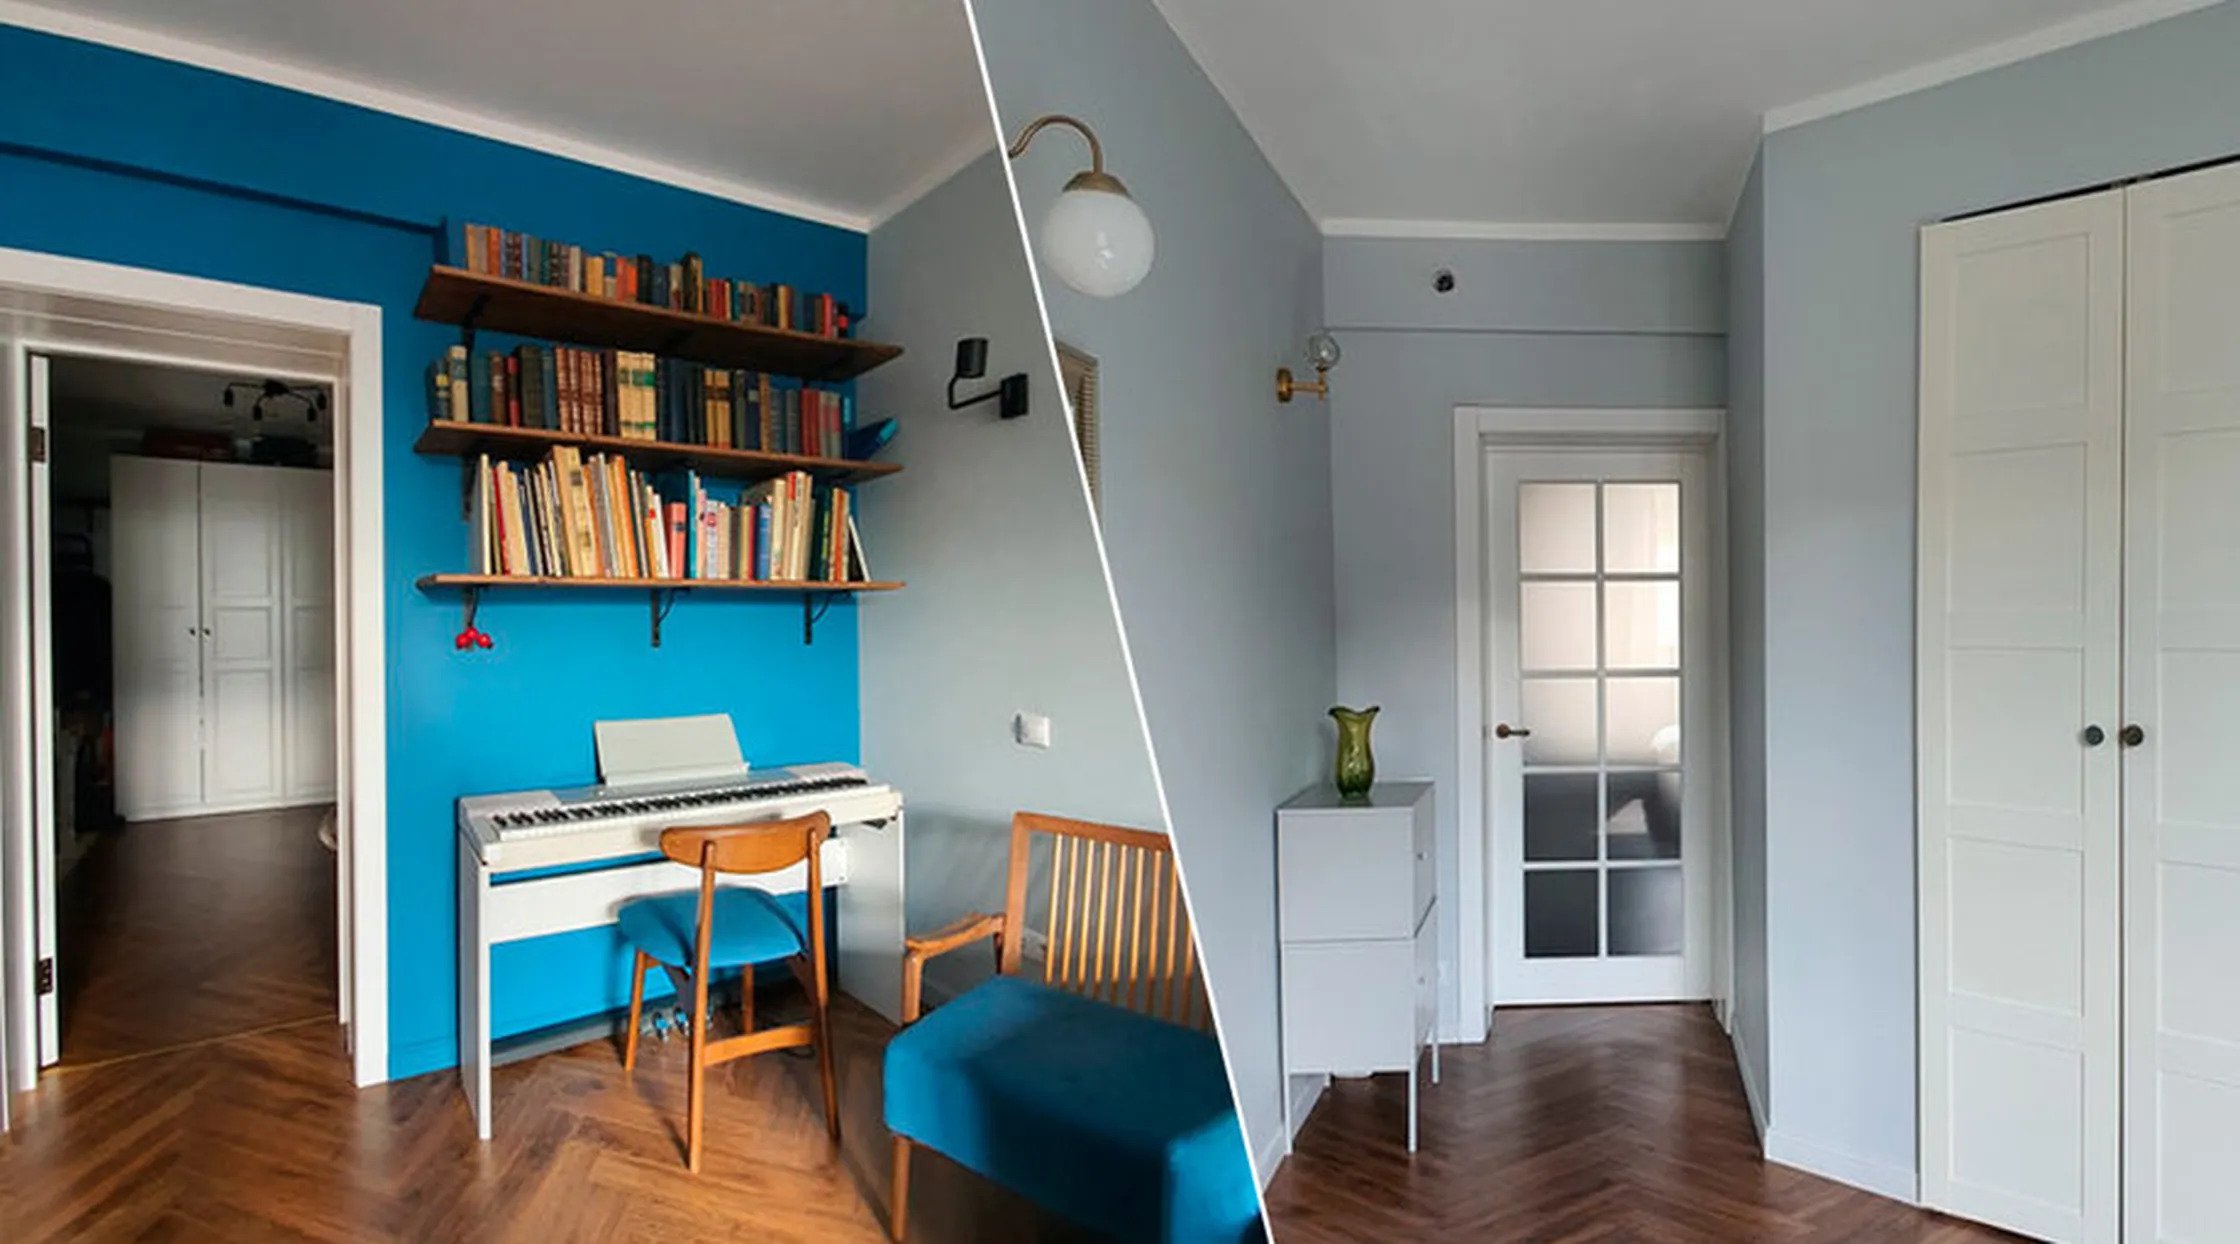 Интерьер квартиры: современный минимализм и мебель из прошлого идеи для дома,интерьер и дизайн